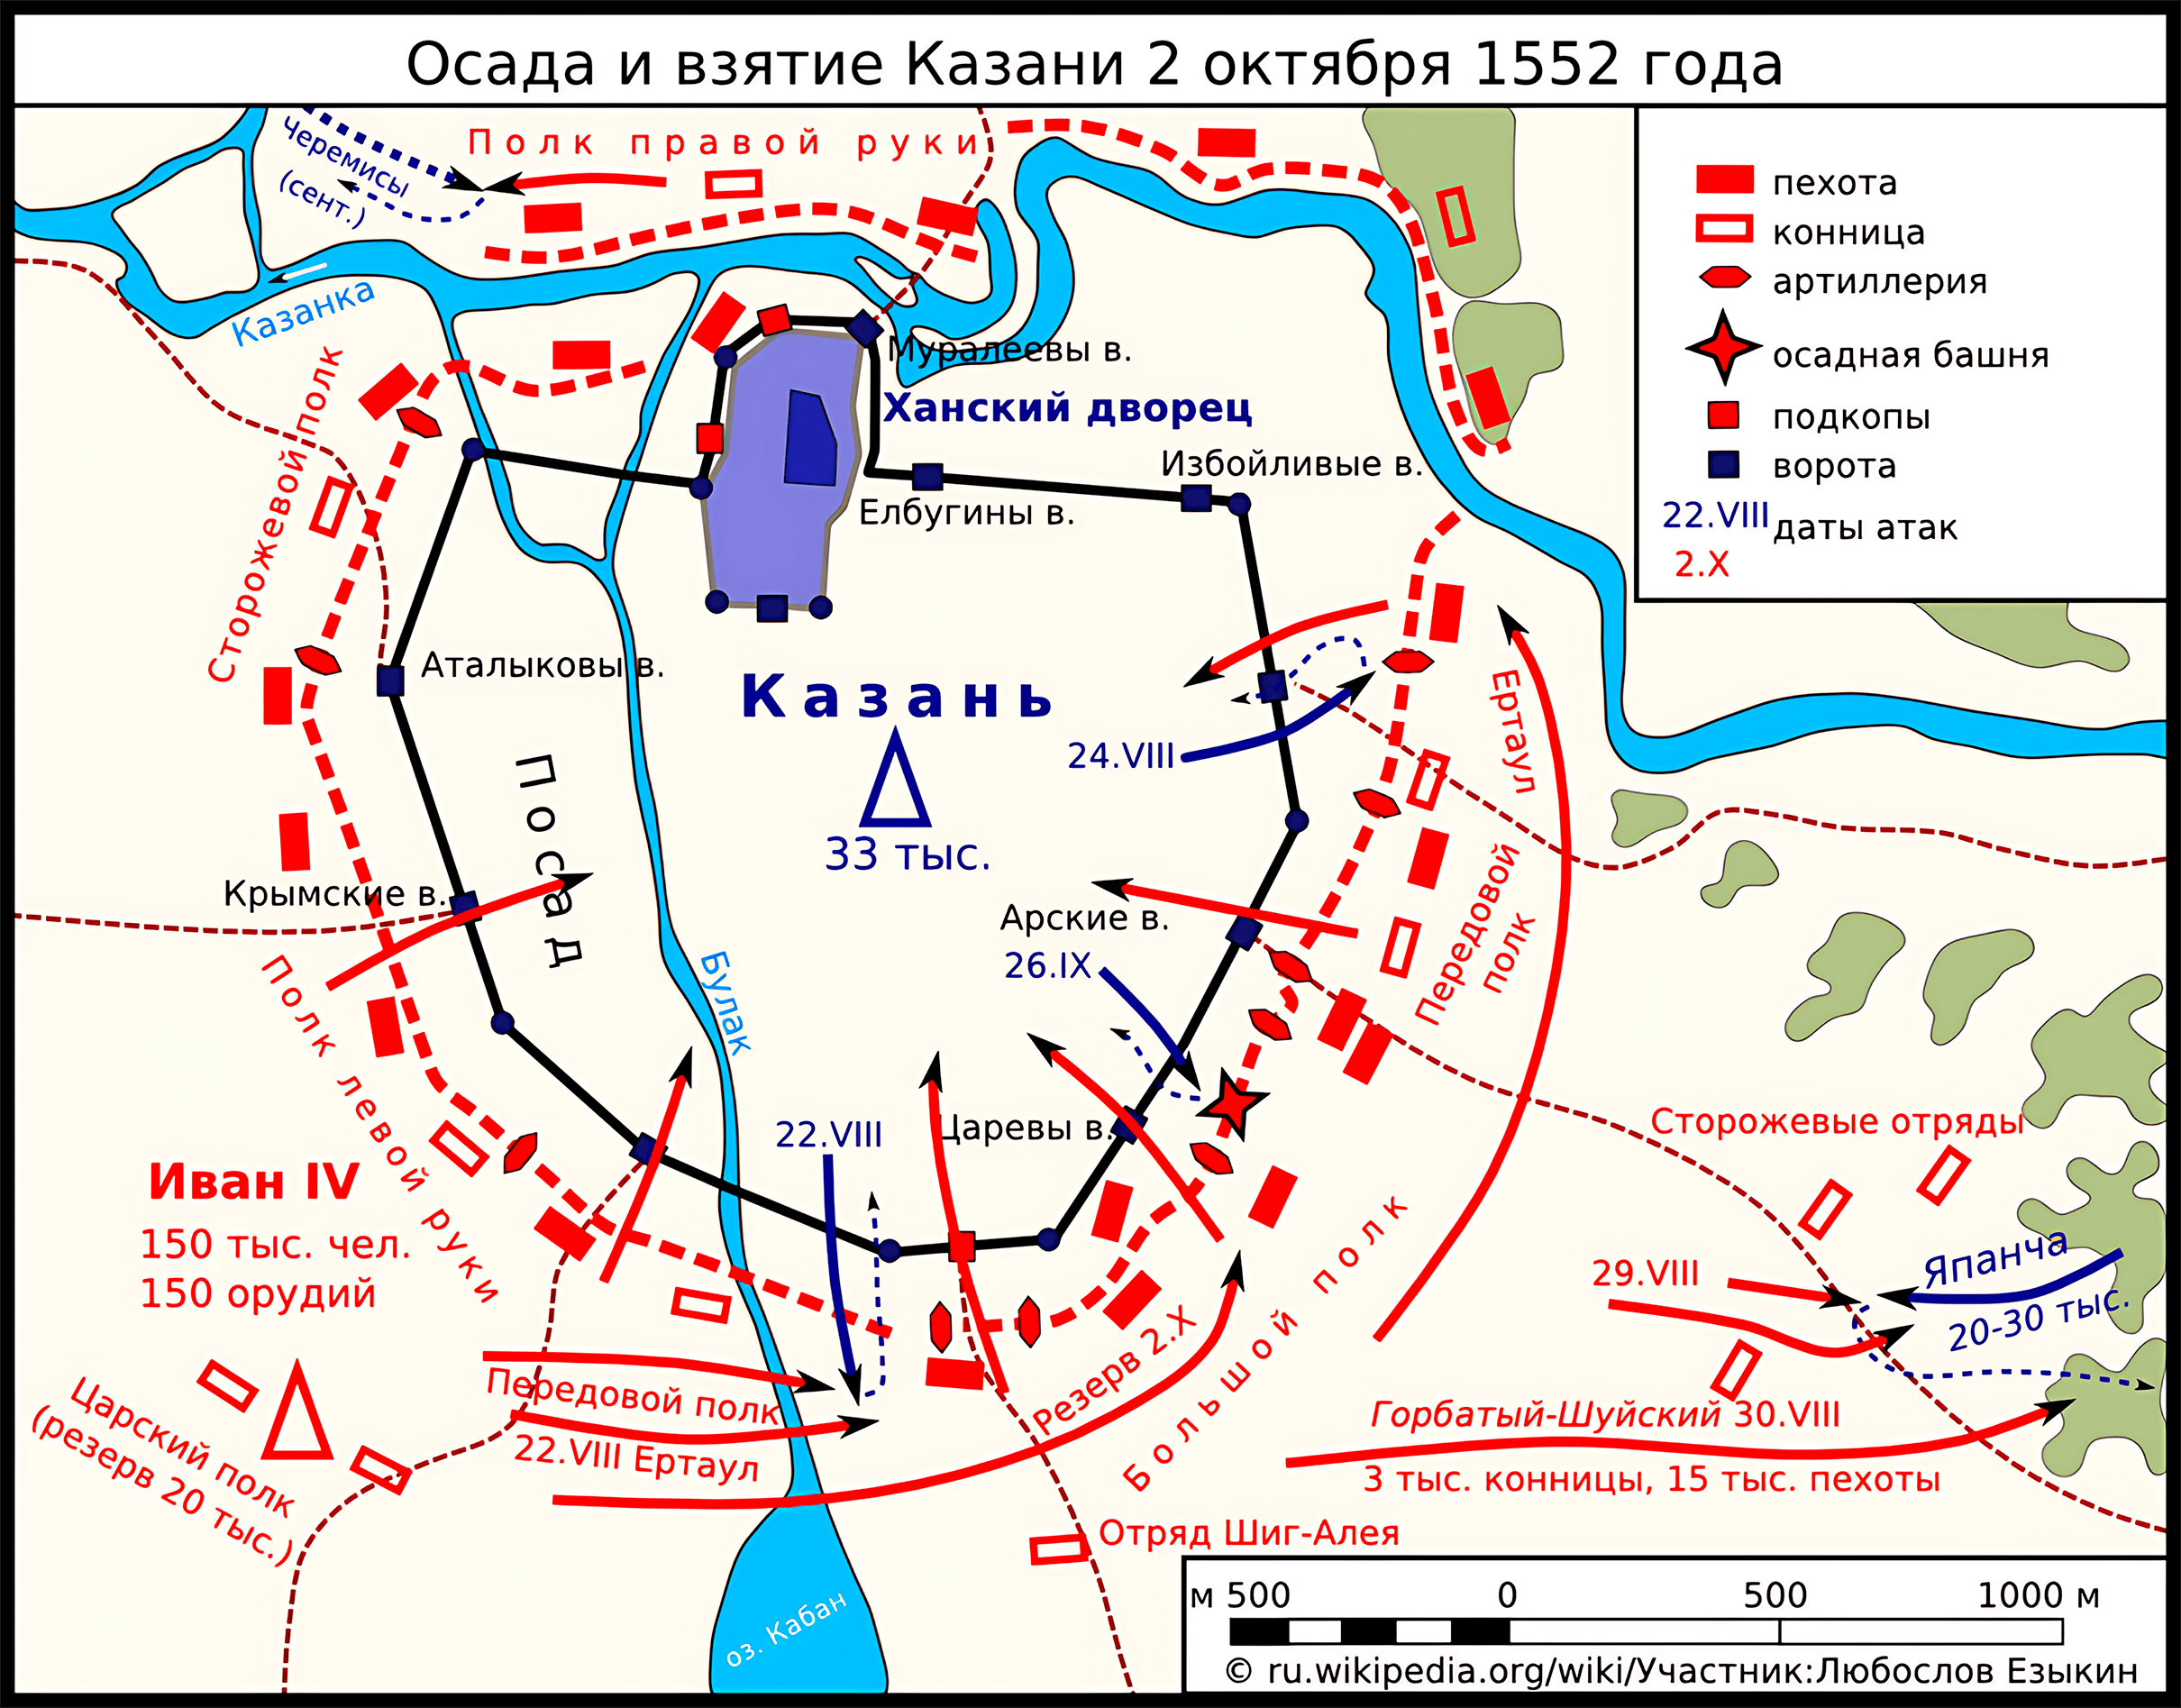 Карта осады и взятия Казани 2 октября 1552 года